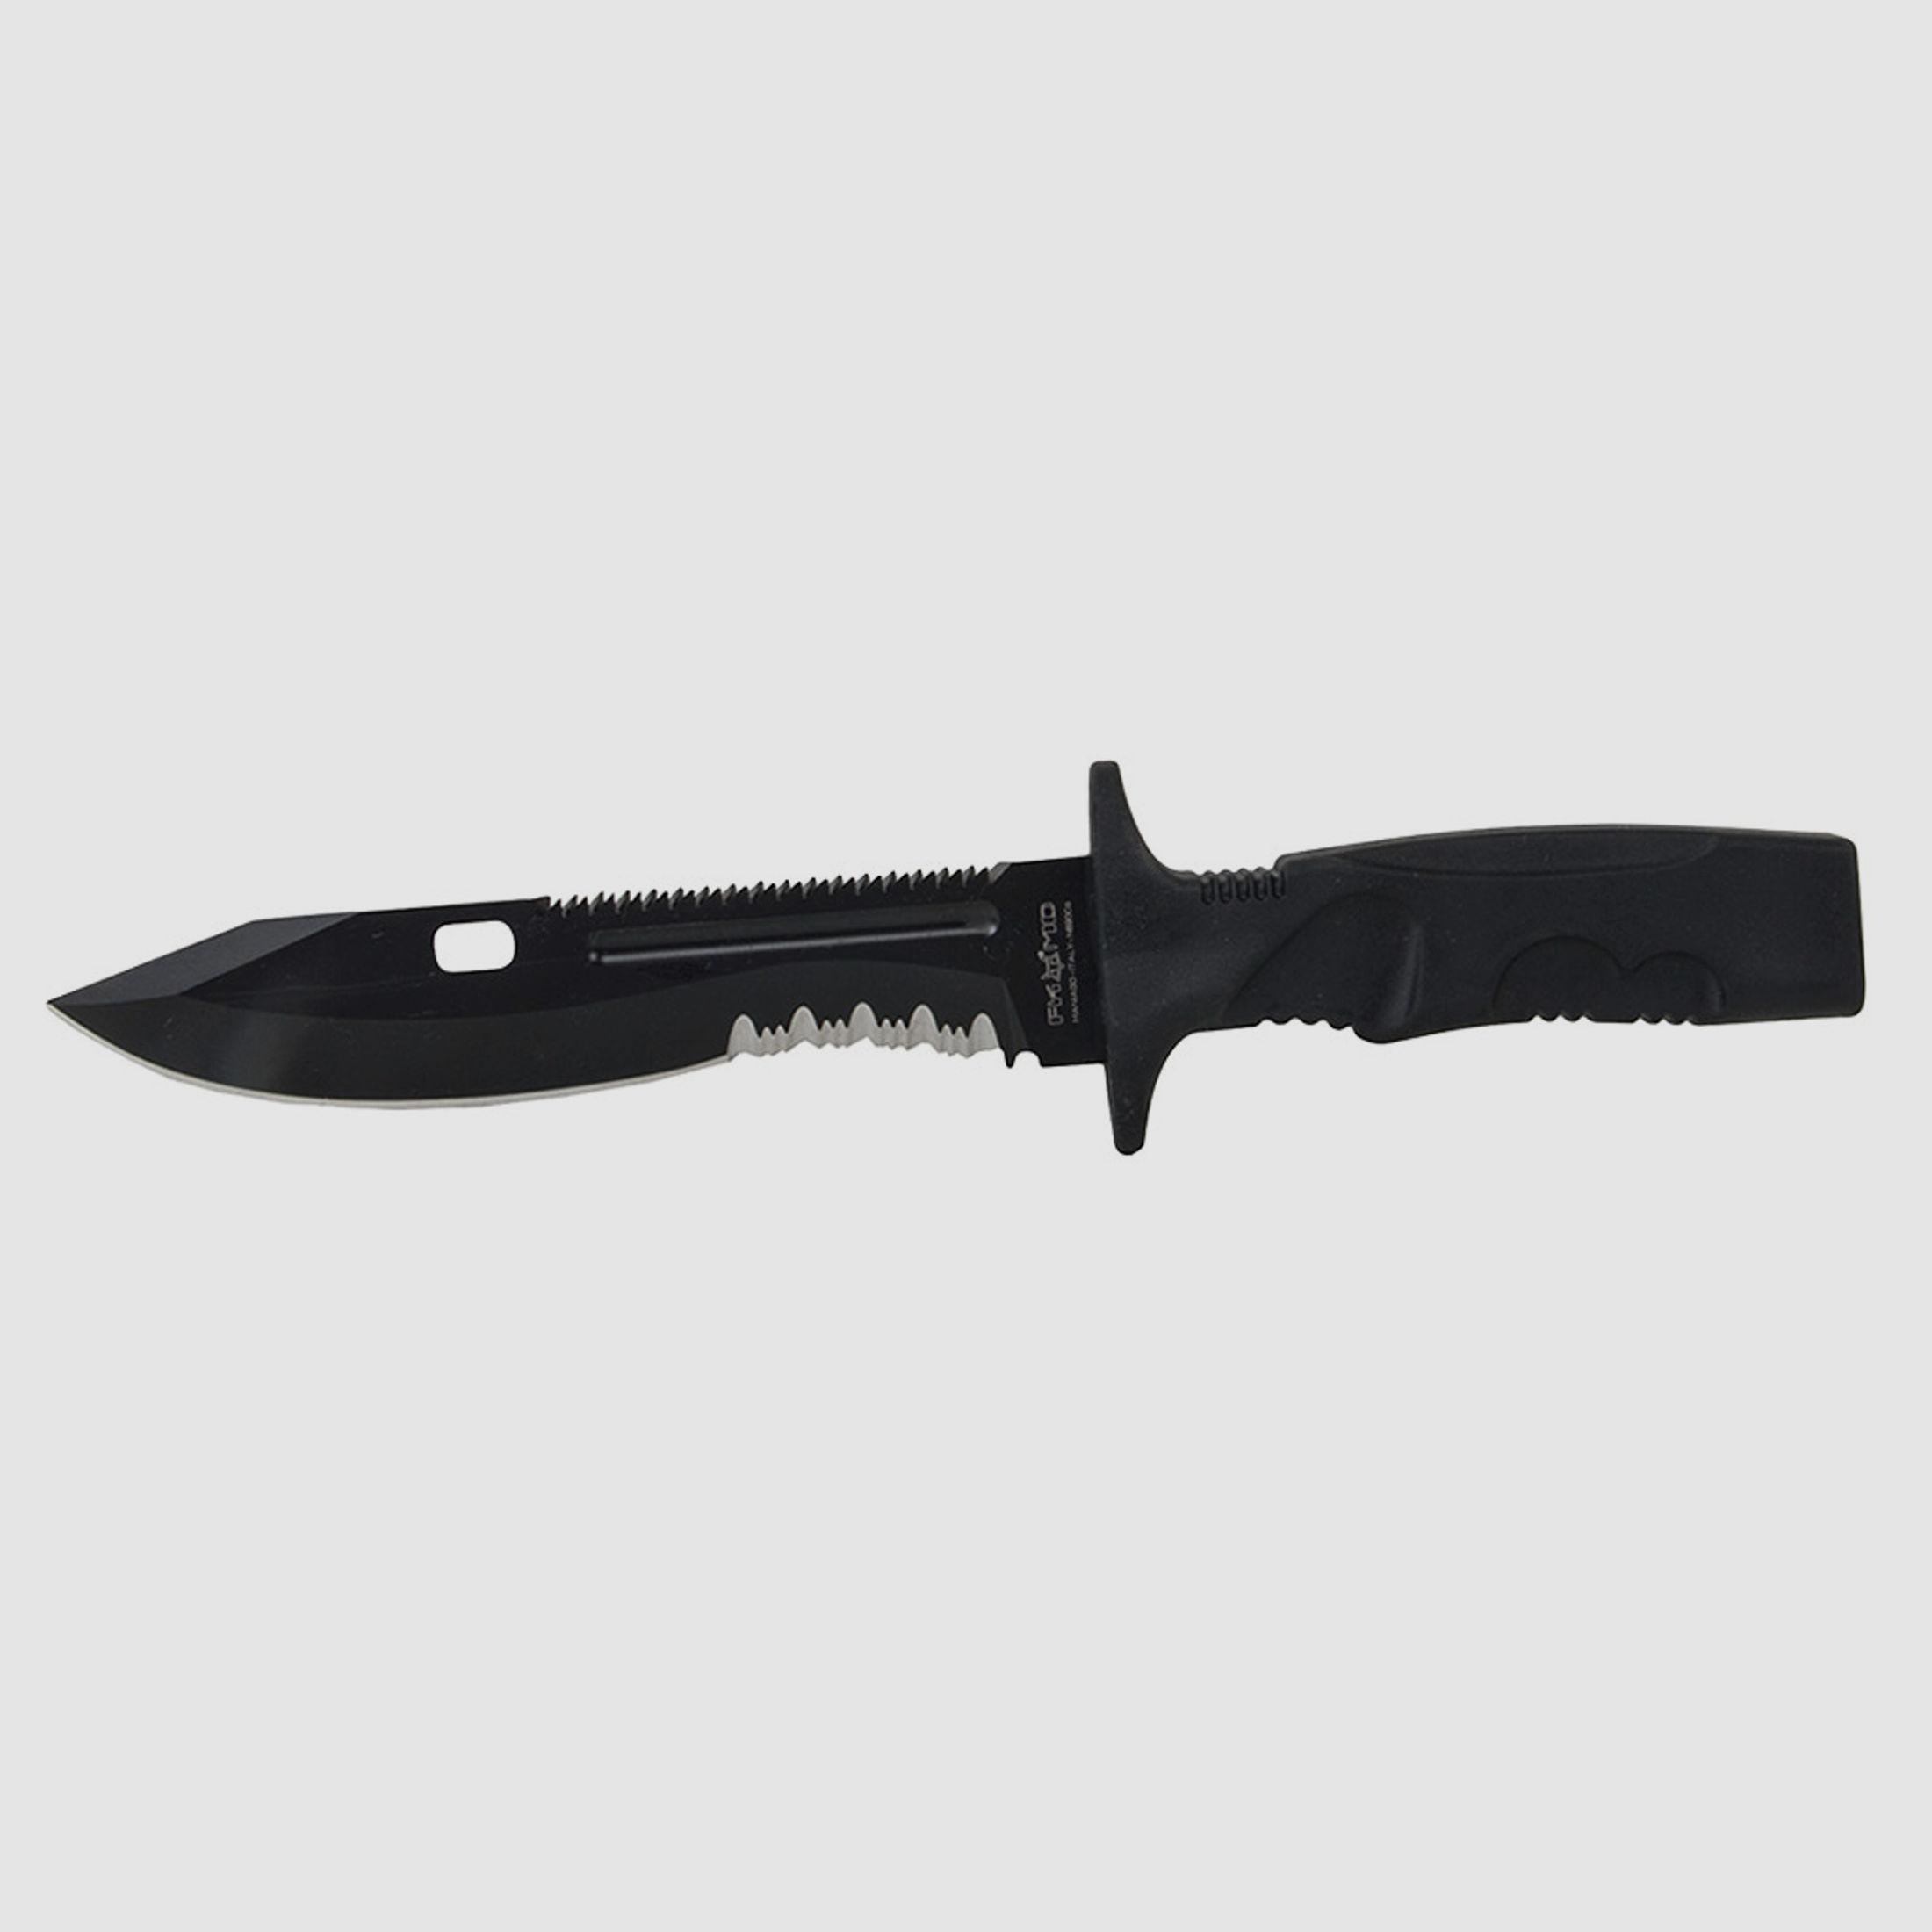 Outdoormesser FKMD Combat Survival Knife Leonida Stahl N690 KlingenlĂ¤nge 18,3 cm (P18)